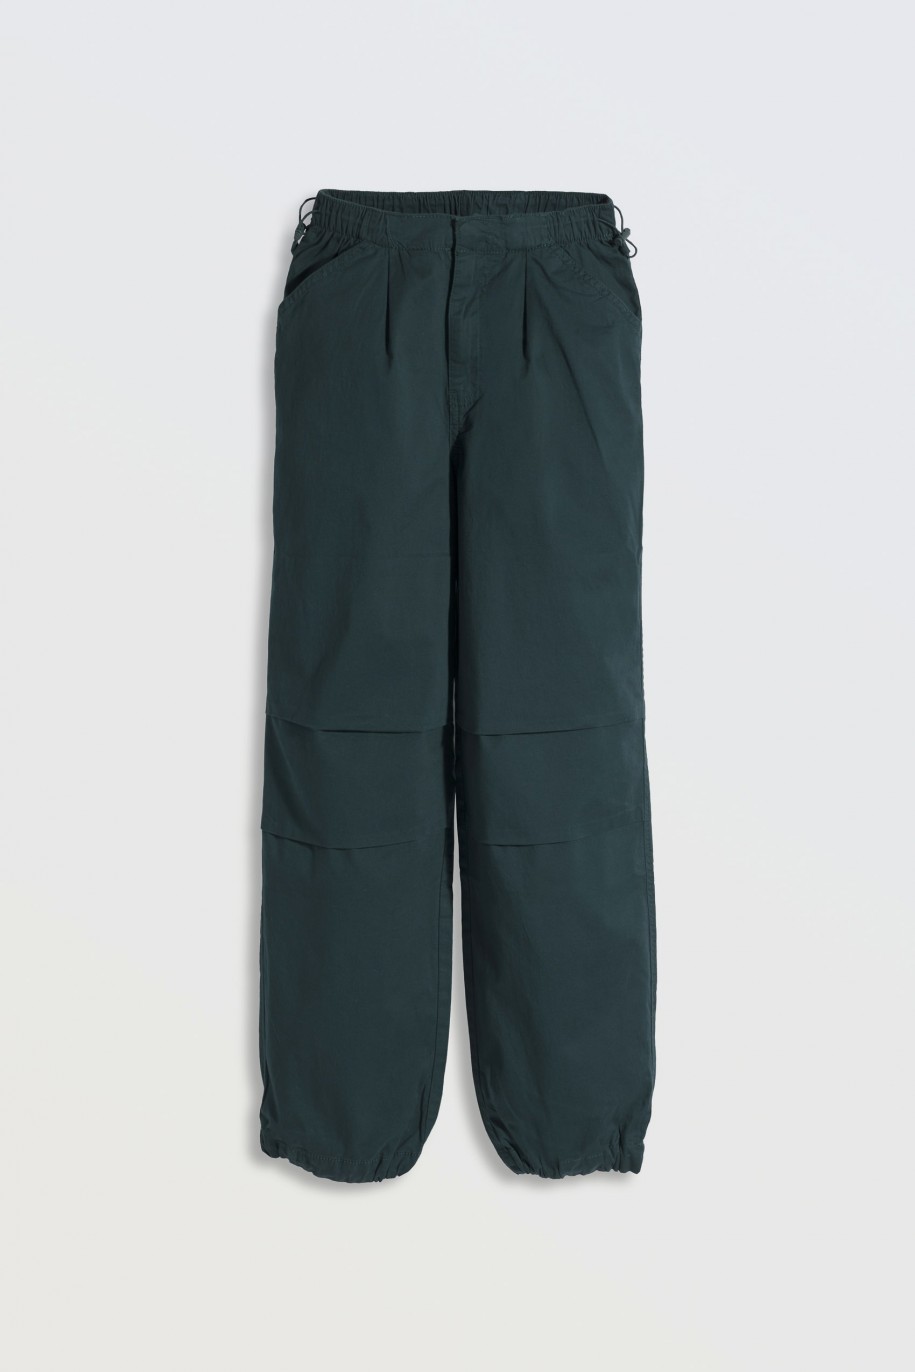 Zielone spodnie typu parachute z zaszewkami na nogawkach - 46308